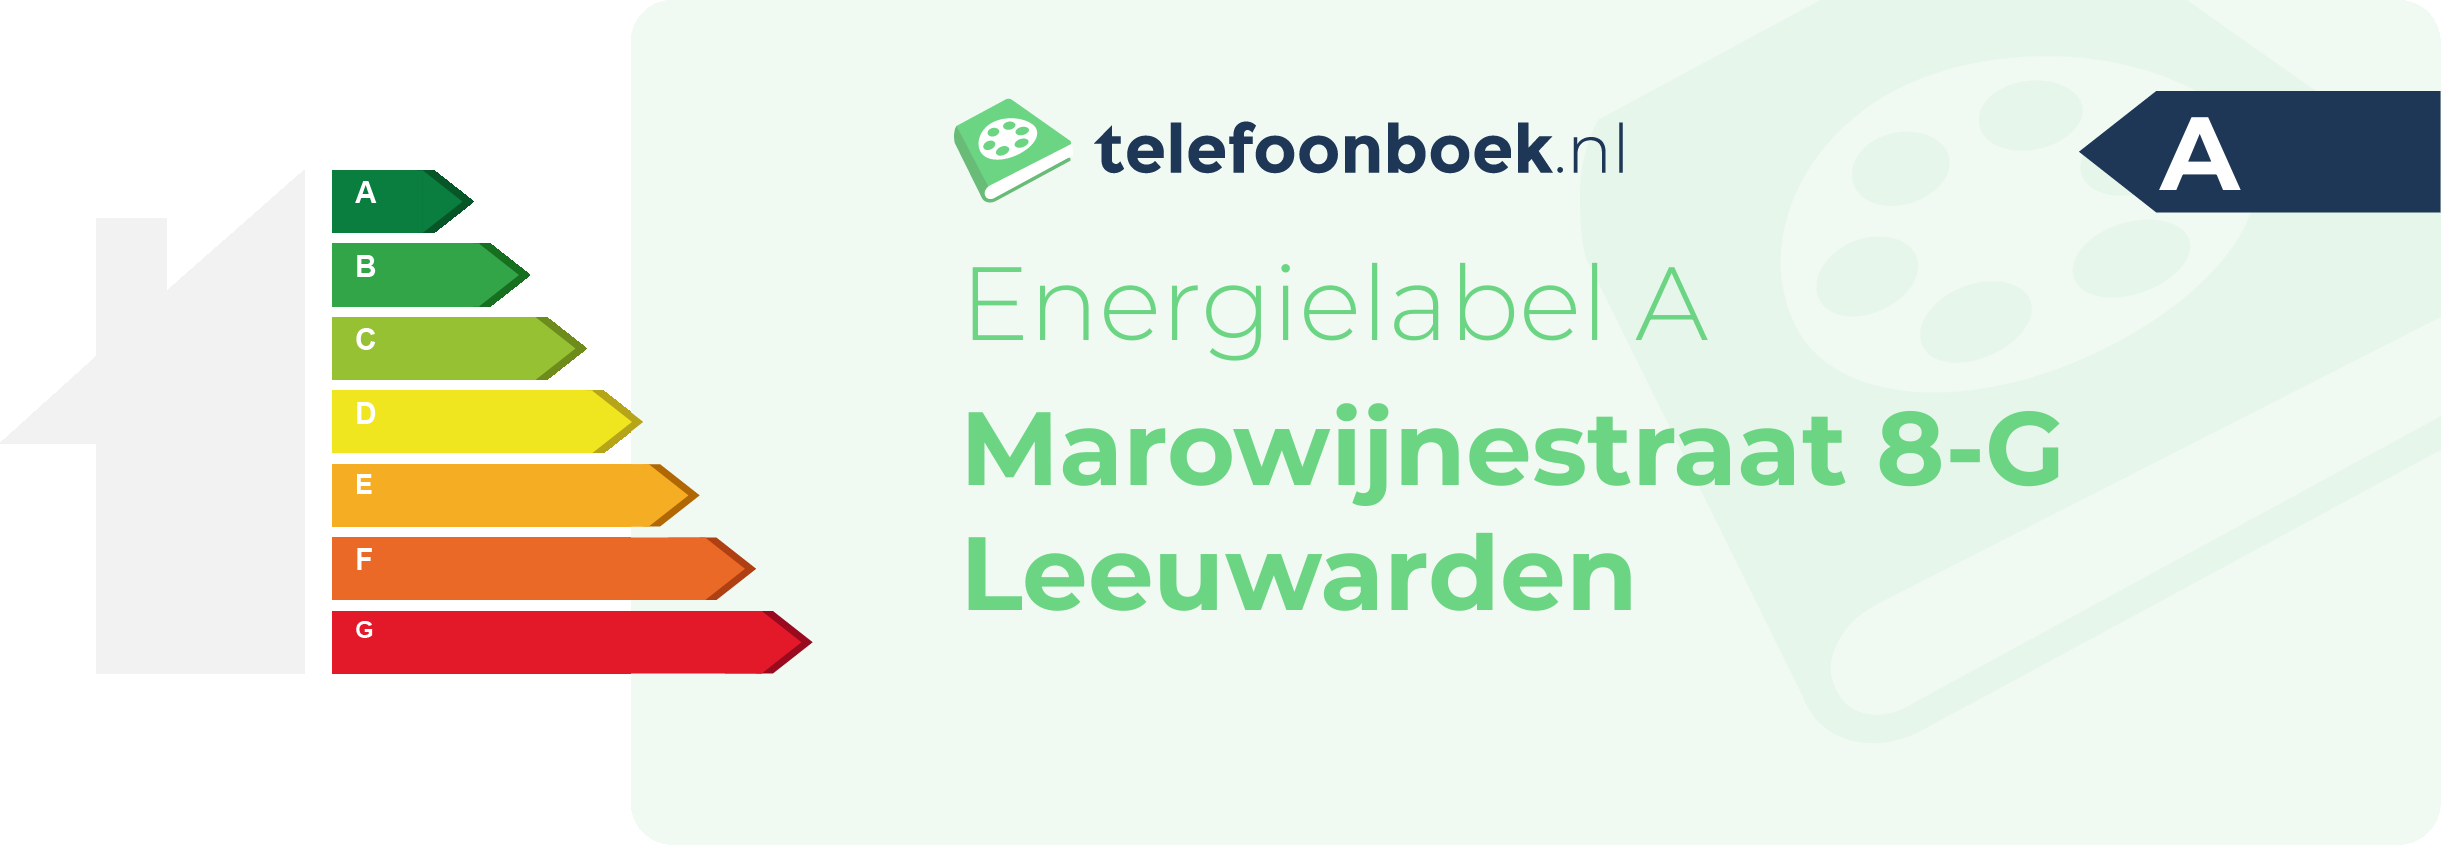 Energielabel Marowijnestraat 8-G Leeuwarden